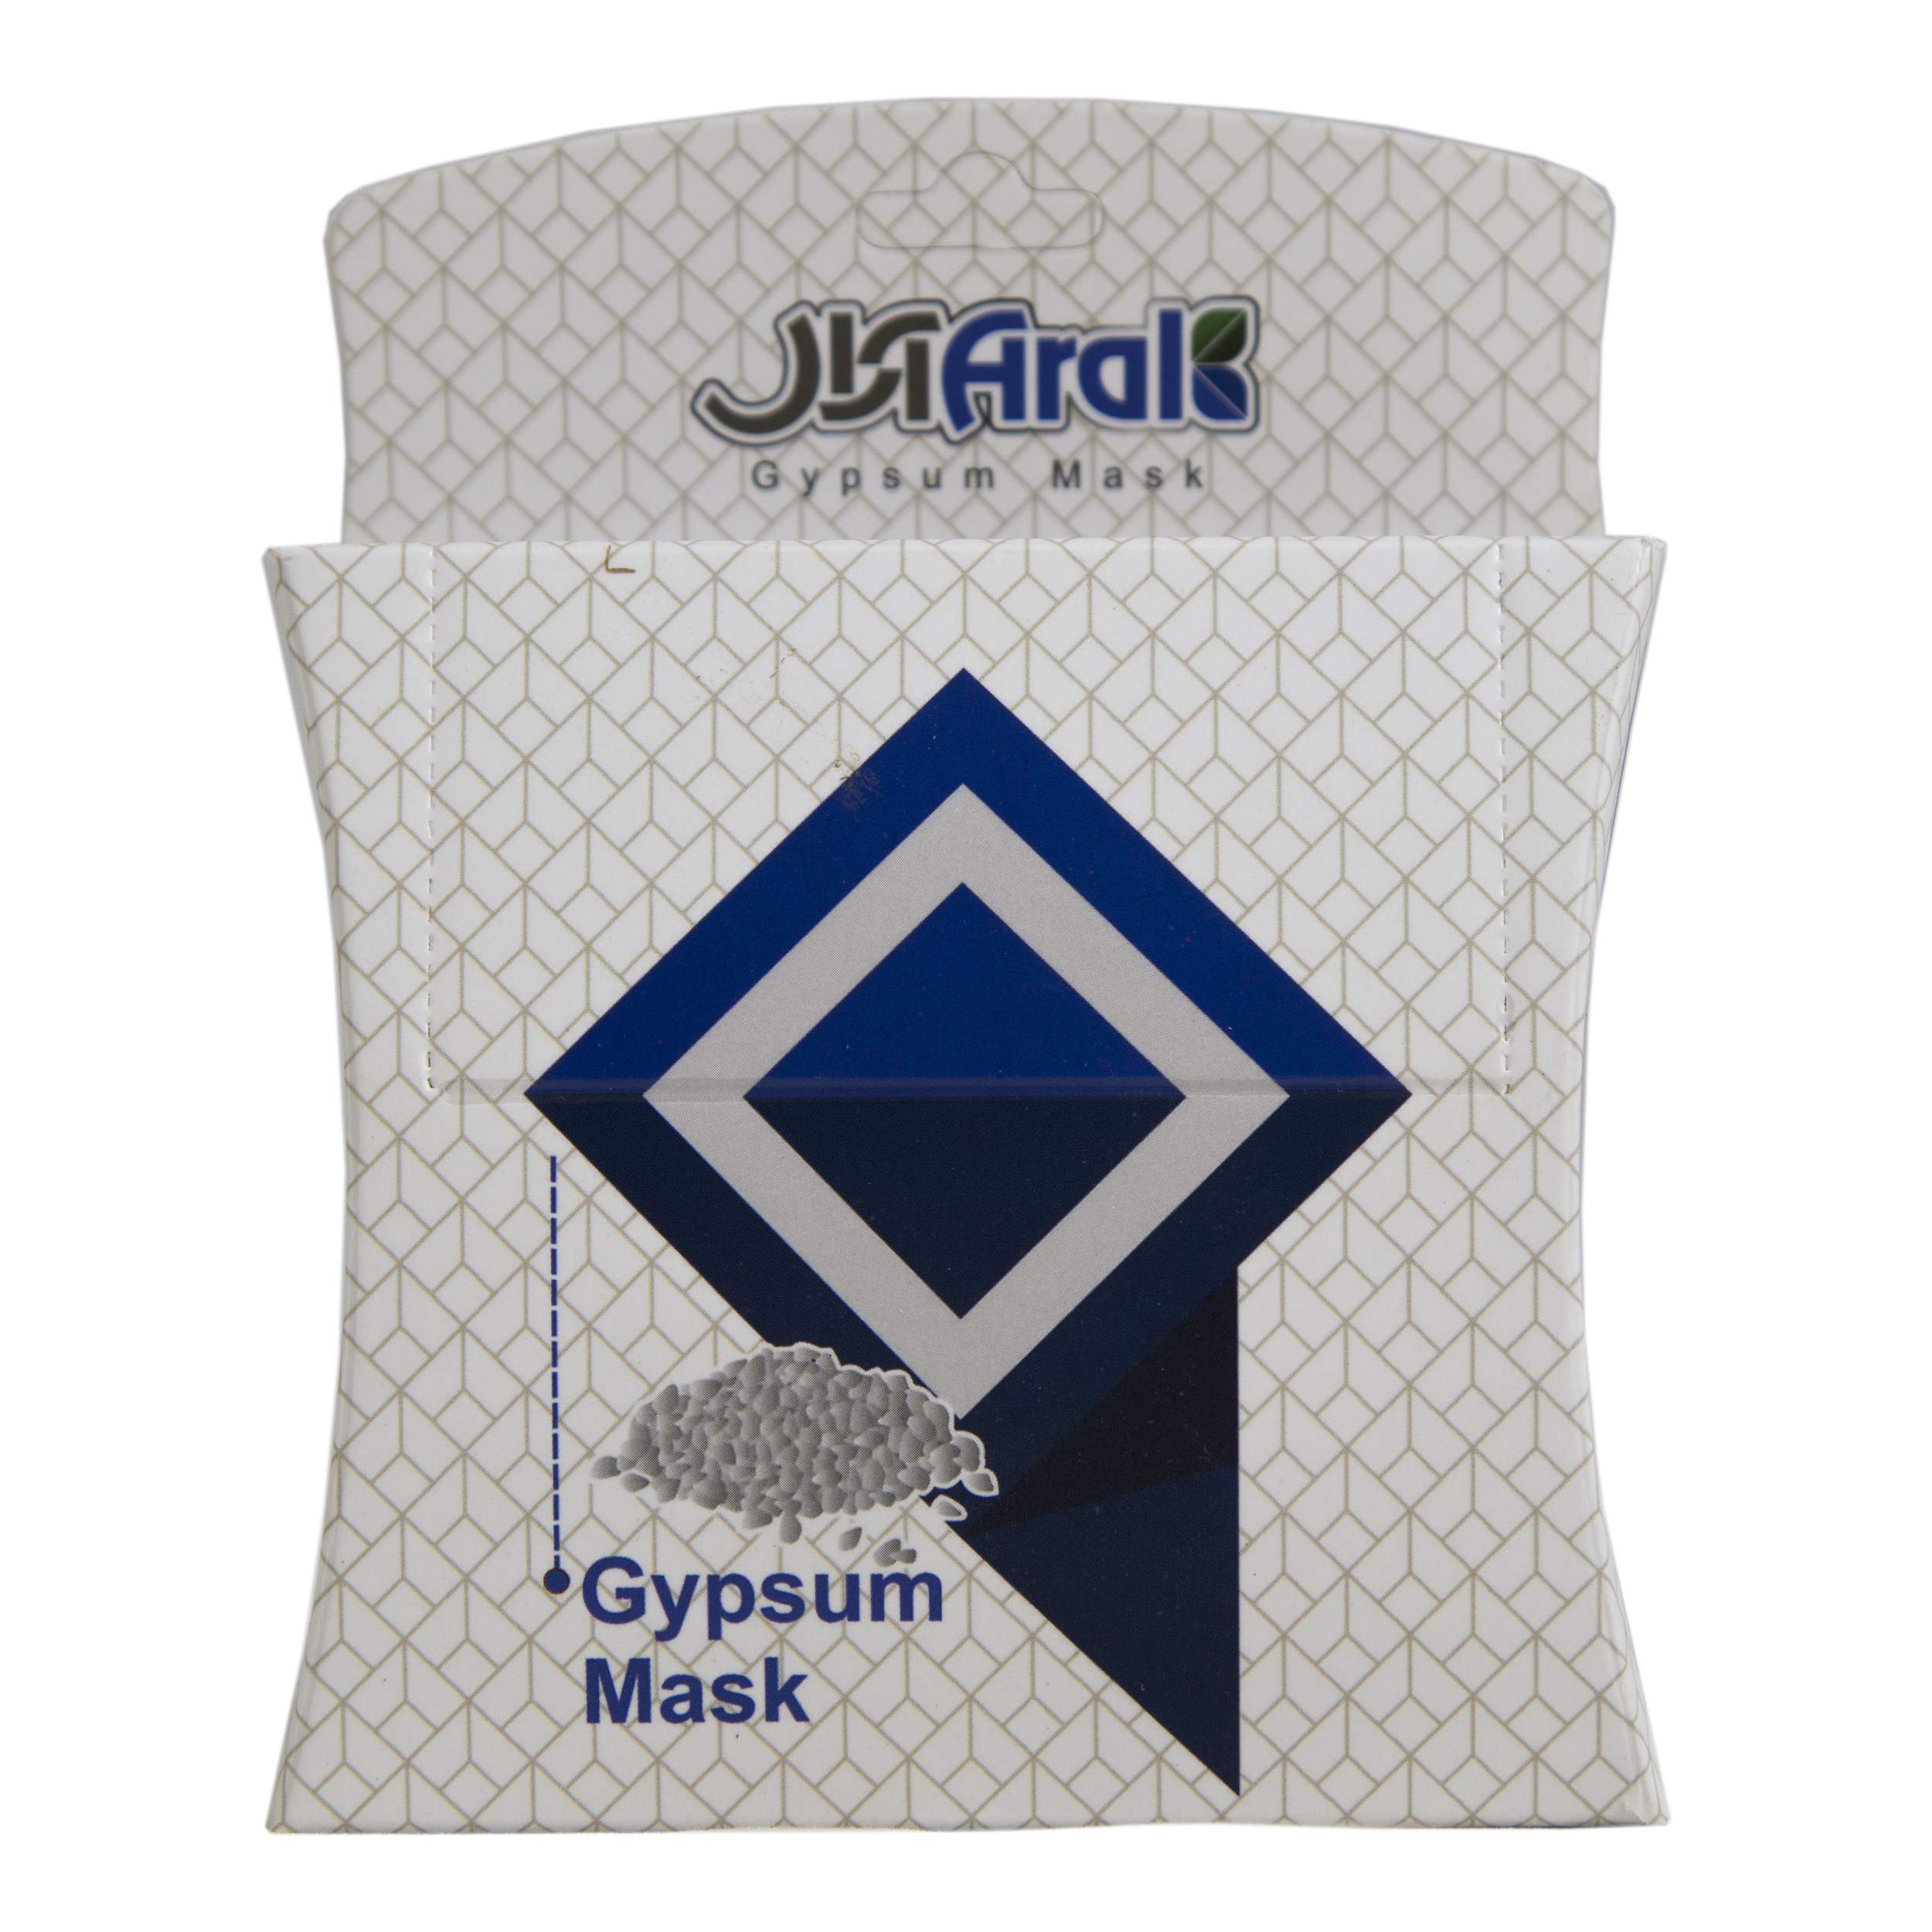 ماسک صورت آرال مدل Gypsum mask وزن  250 گرم